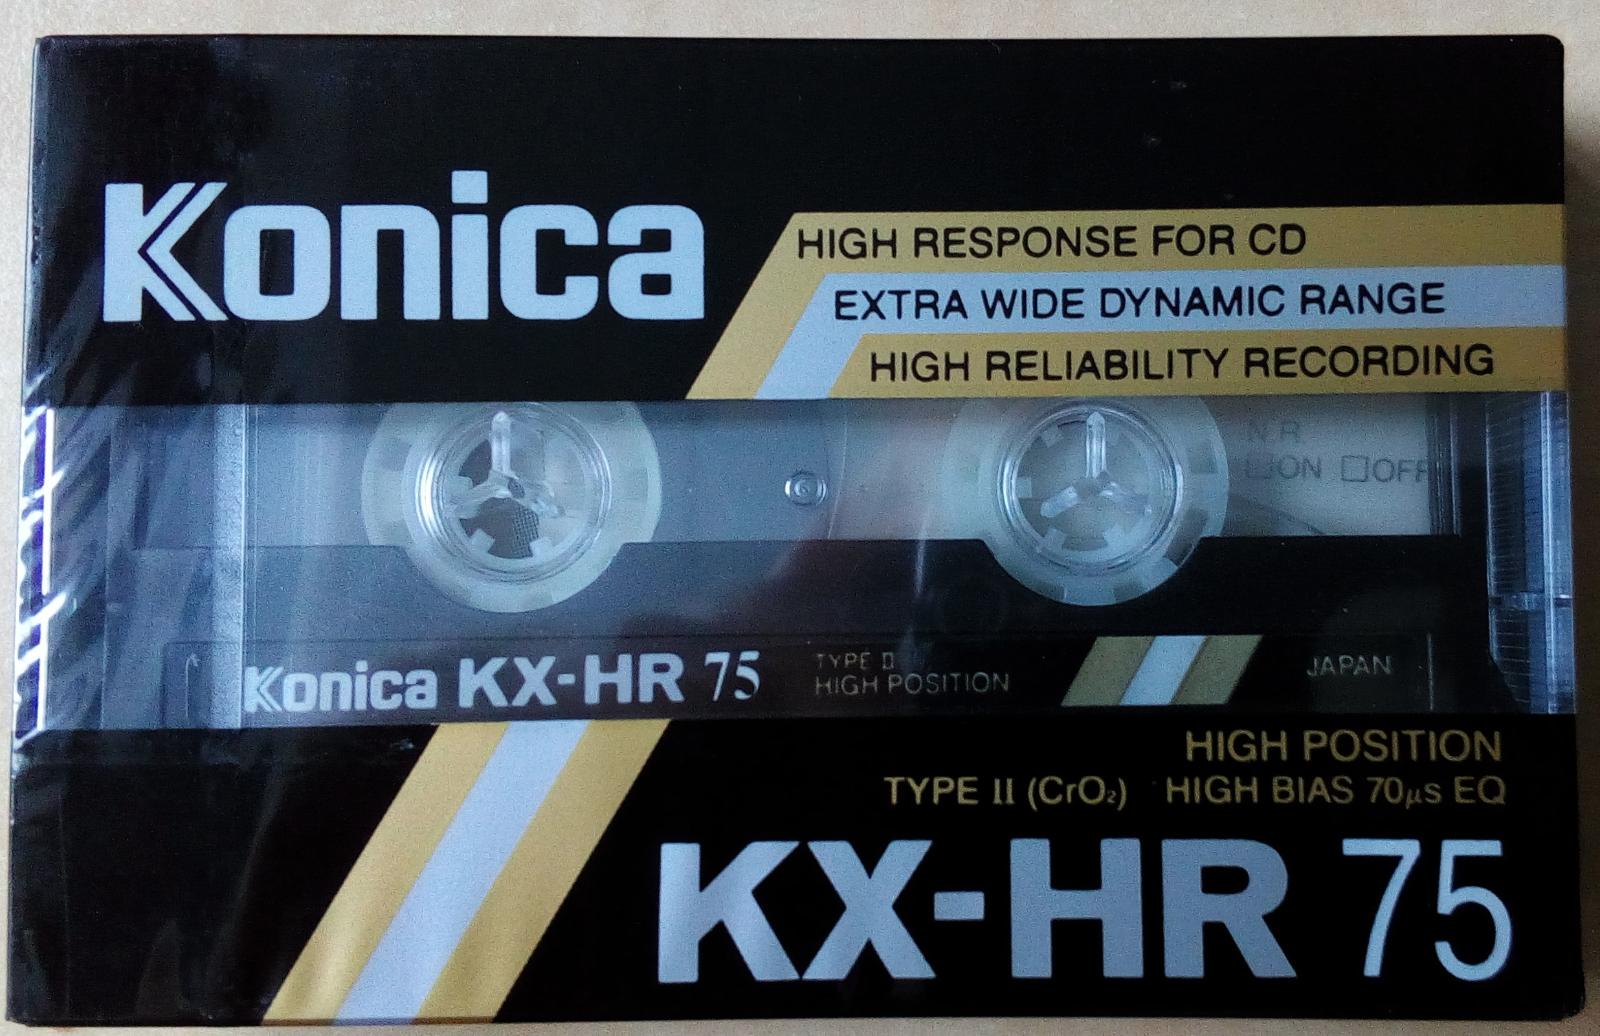 Magnetofónová kazeta Konica KX-HR 75 - TV, audio, video